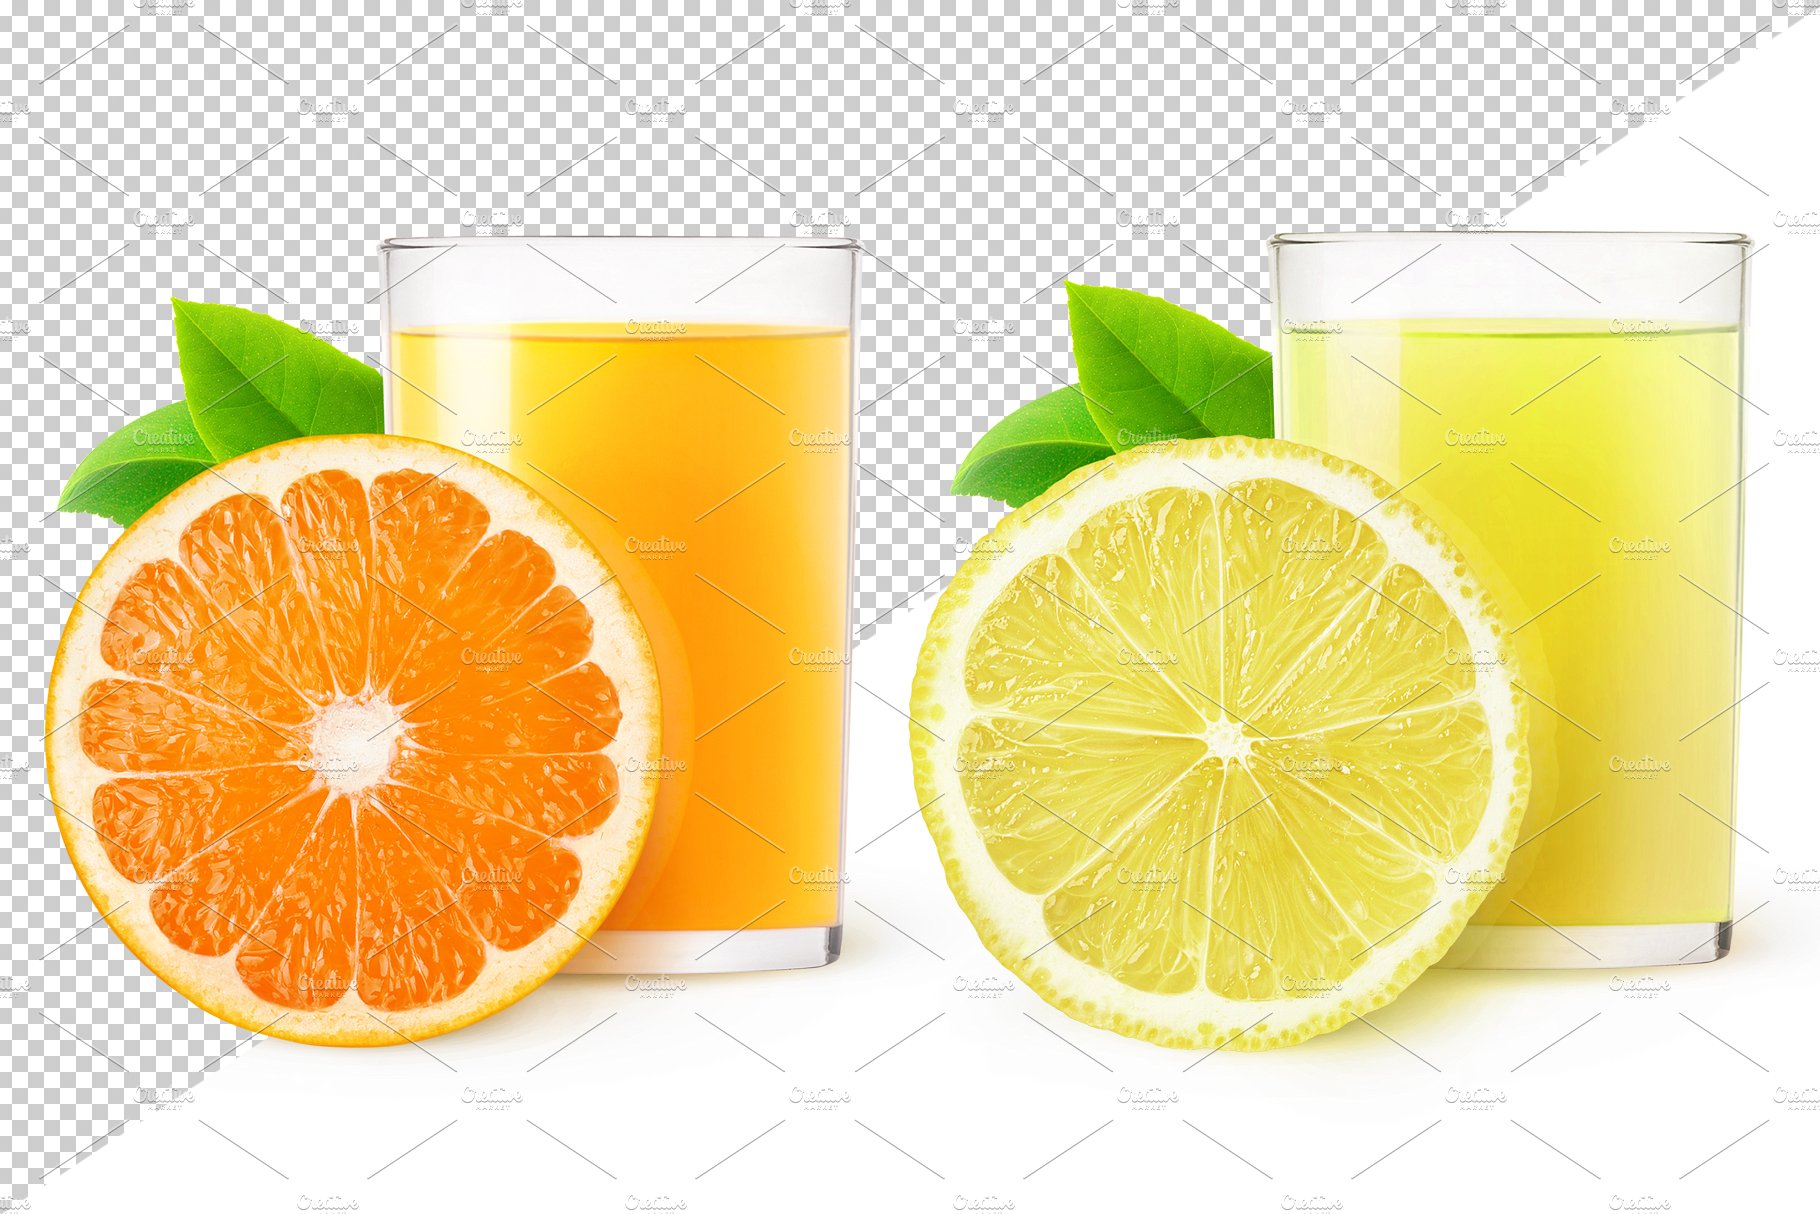 Citrus juices preview image.